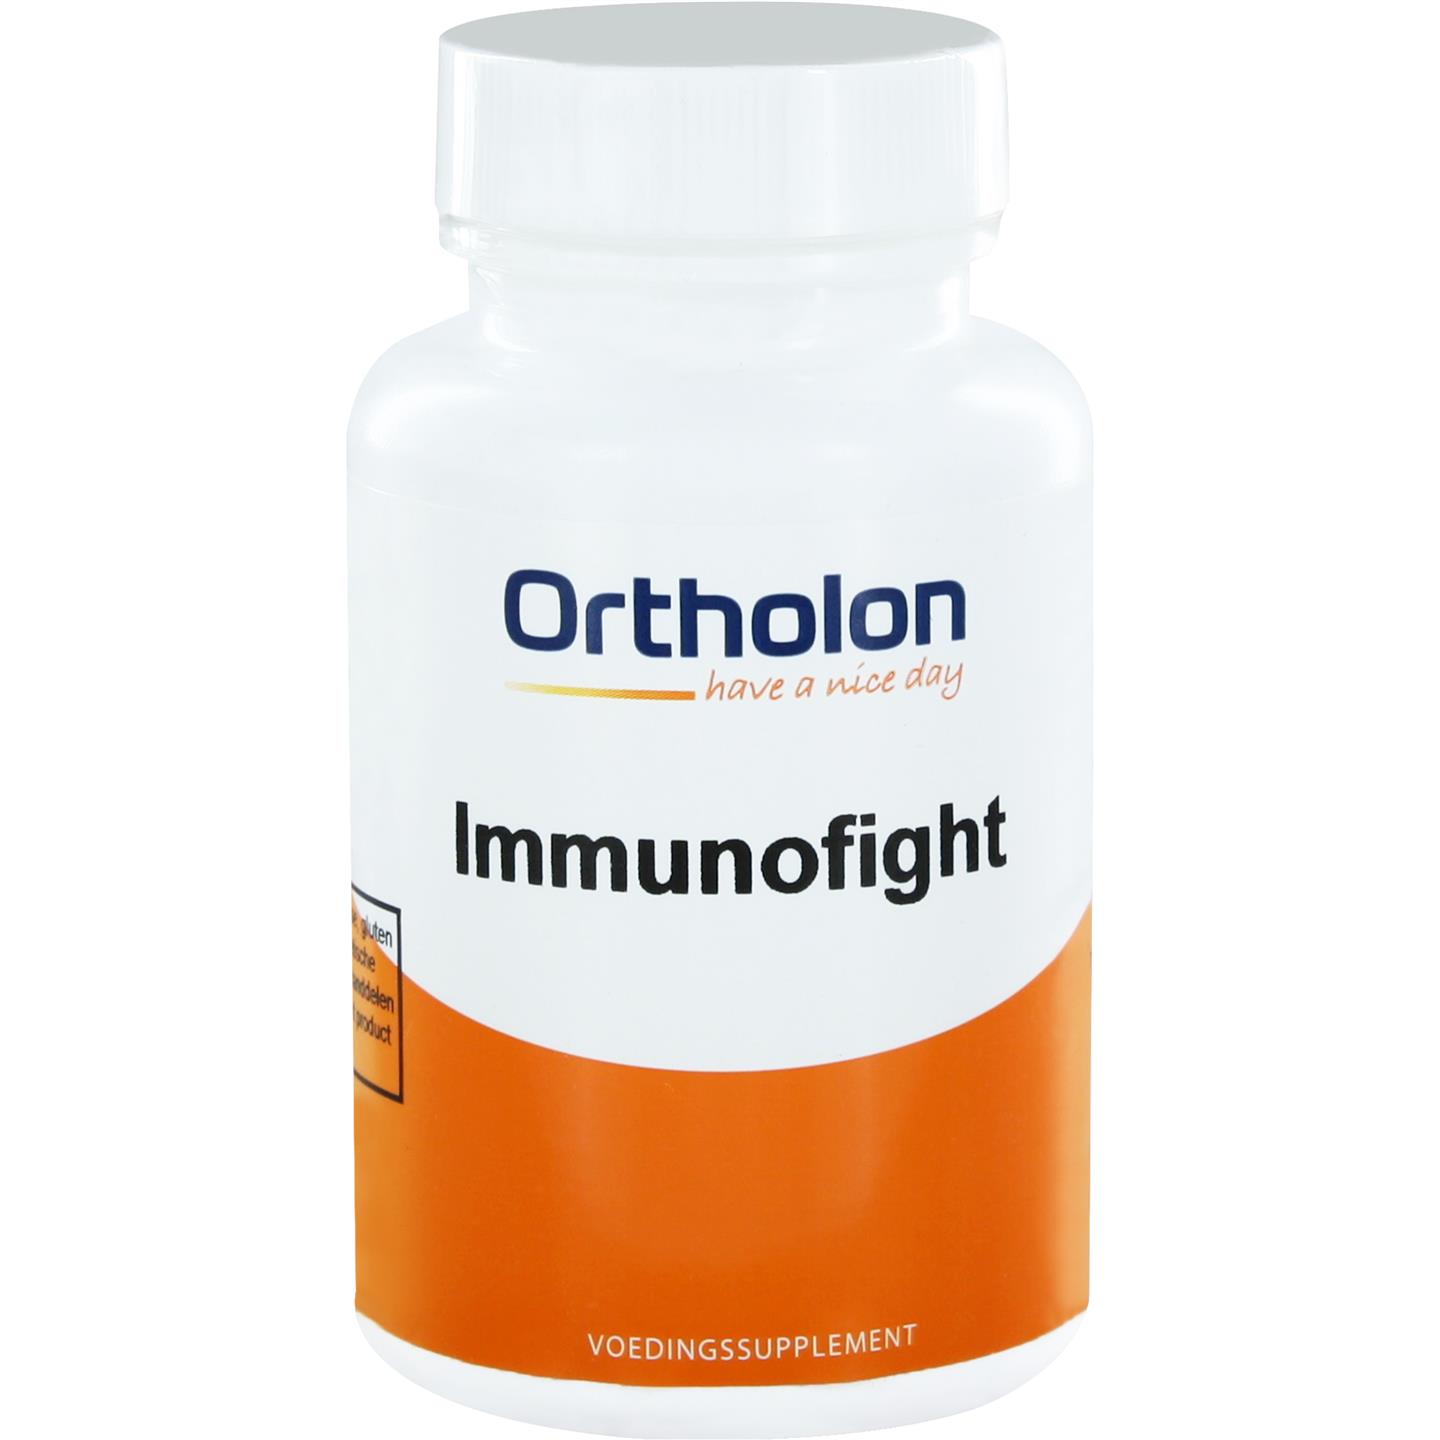 Immunofight